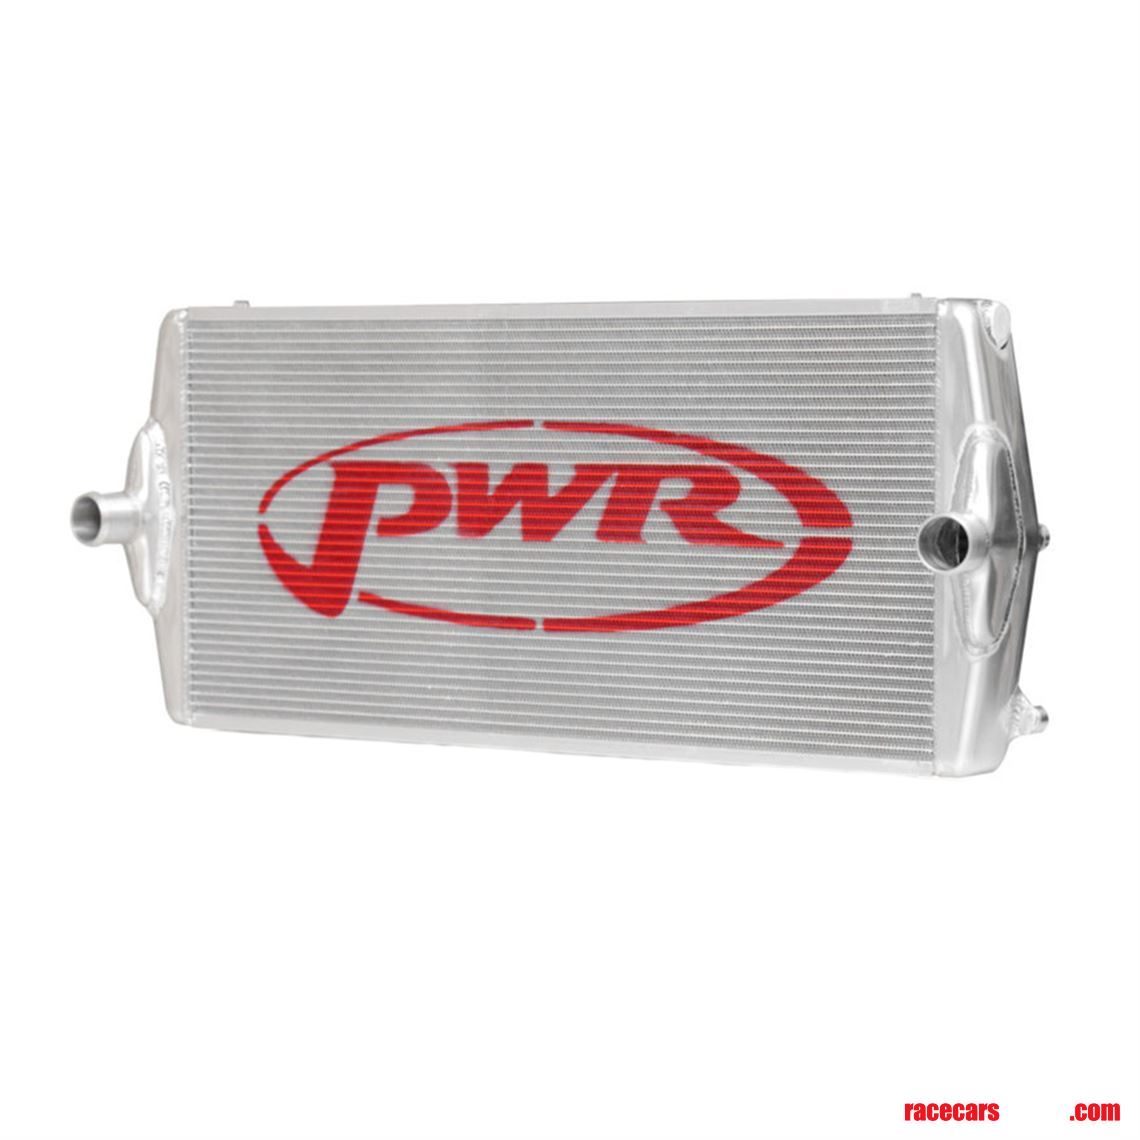 pwr-radiator-porsche-997-gt3-rsr